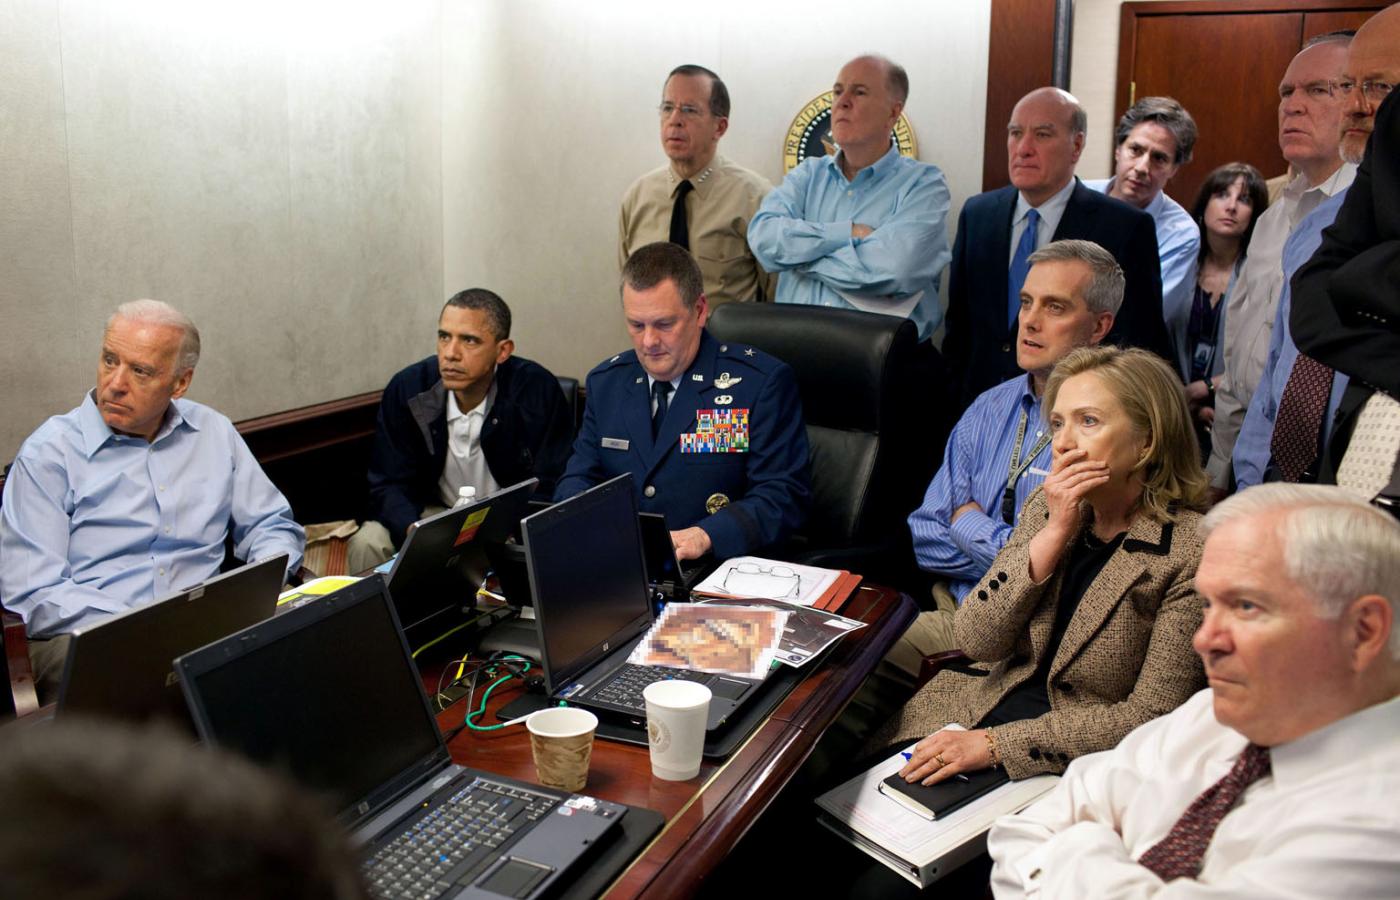 Słynne już zdjęcie, na którym prezydent Obama i jego najbliżsi współpracownicy śledzą relację z operacji zabicia Osamy ben Ladena.